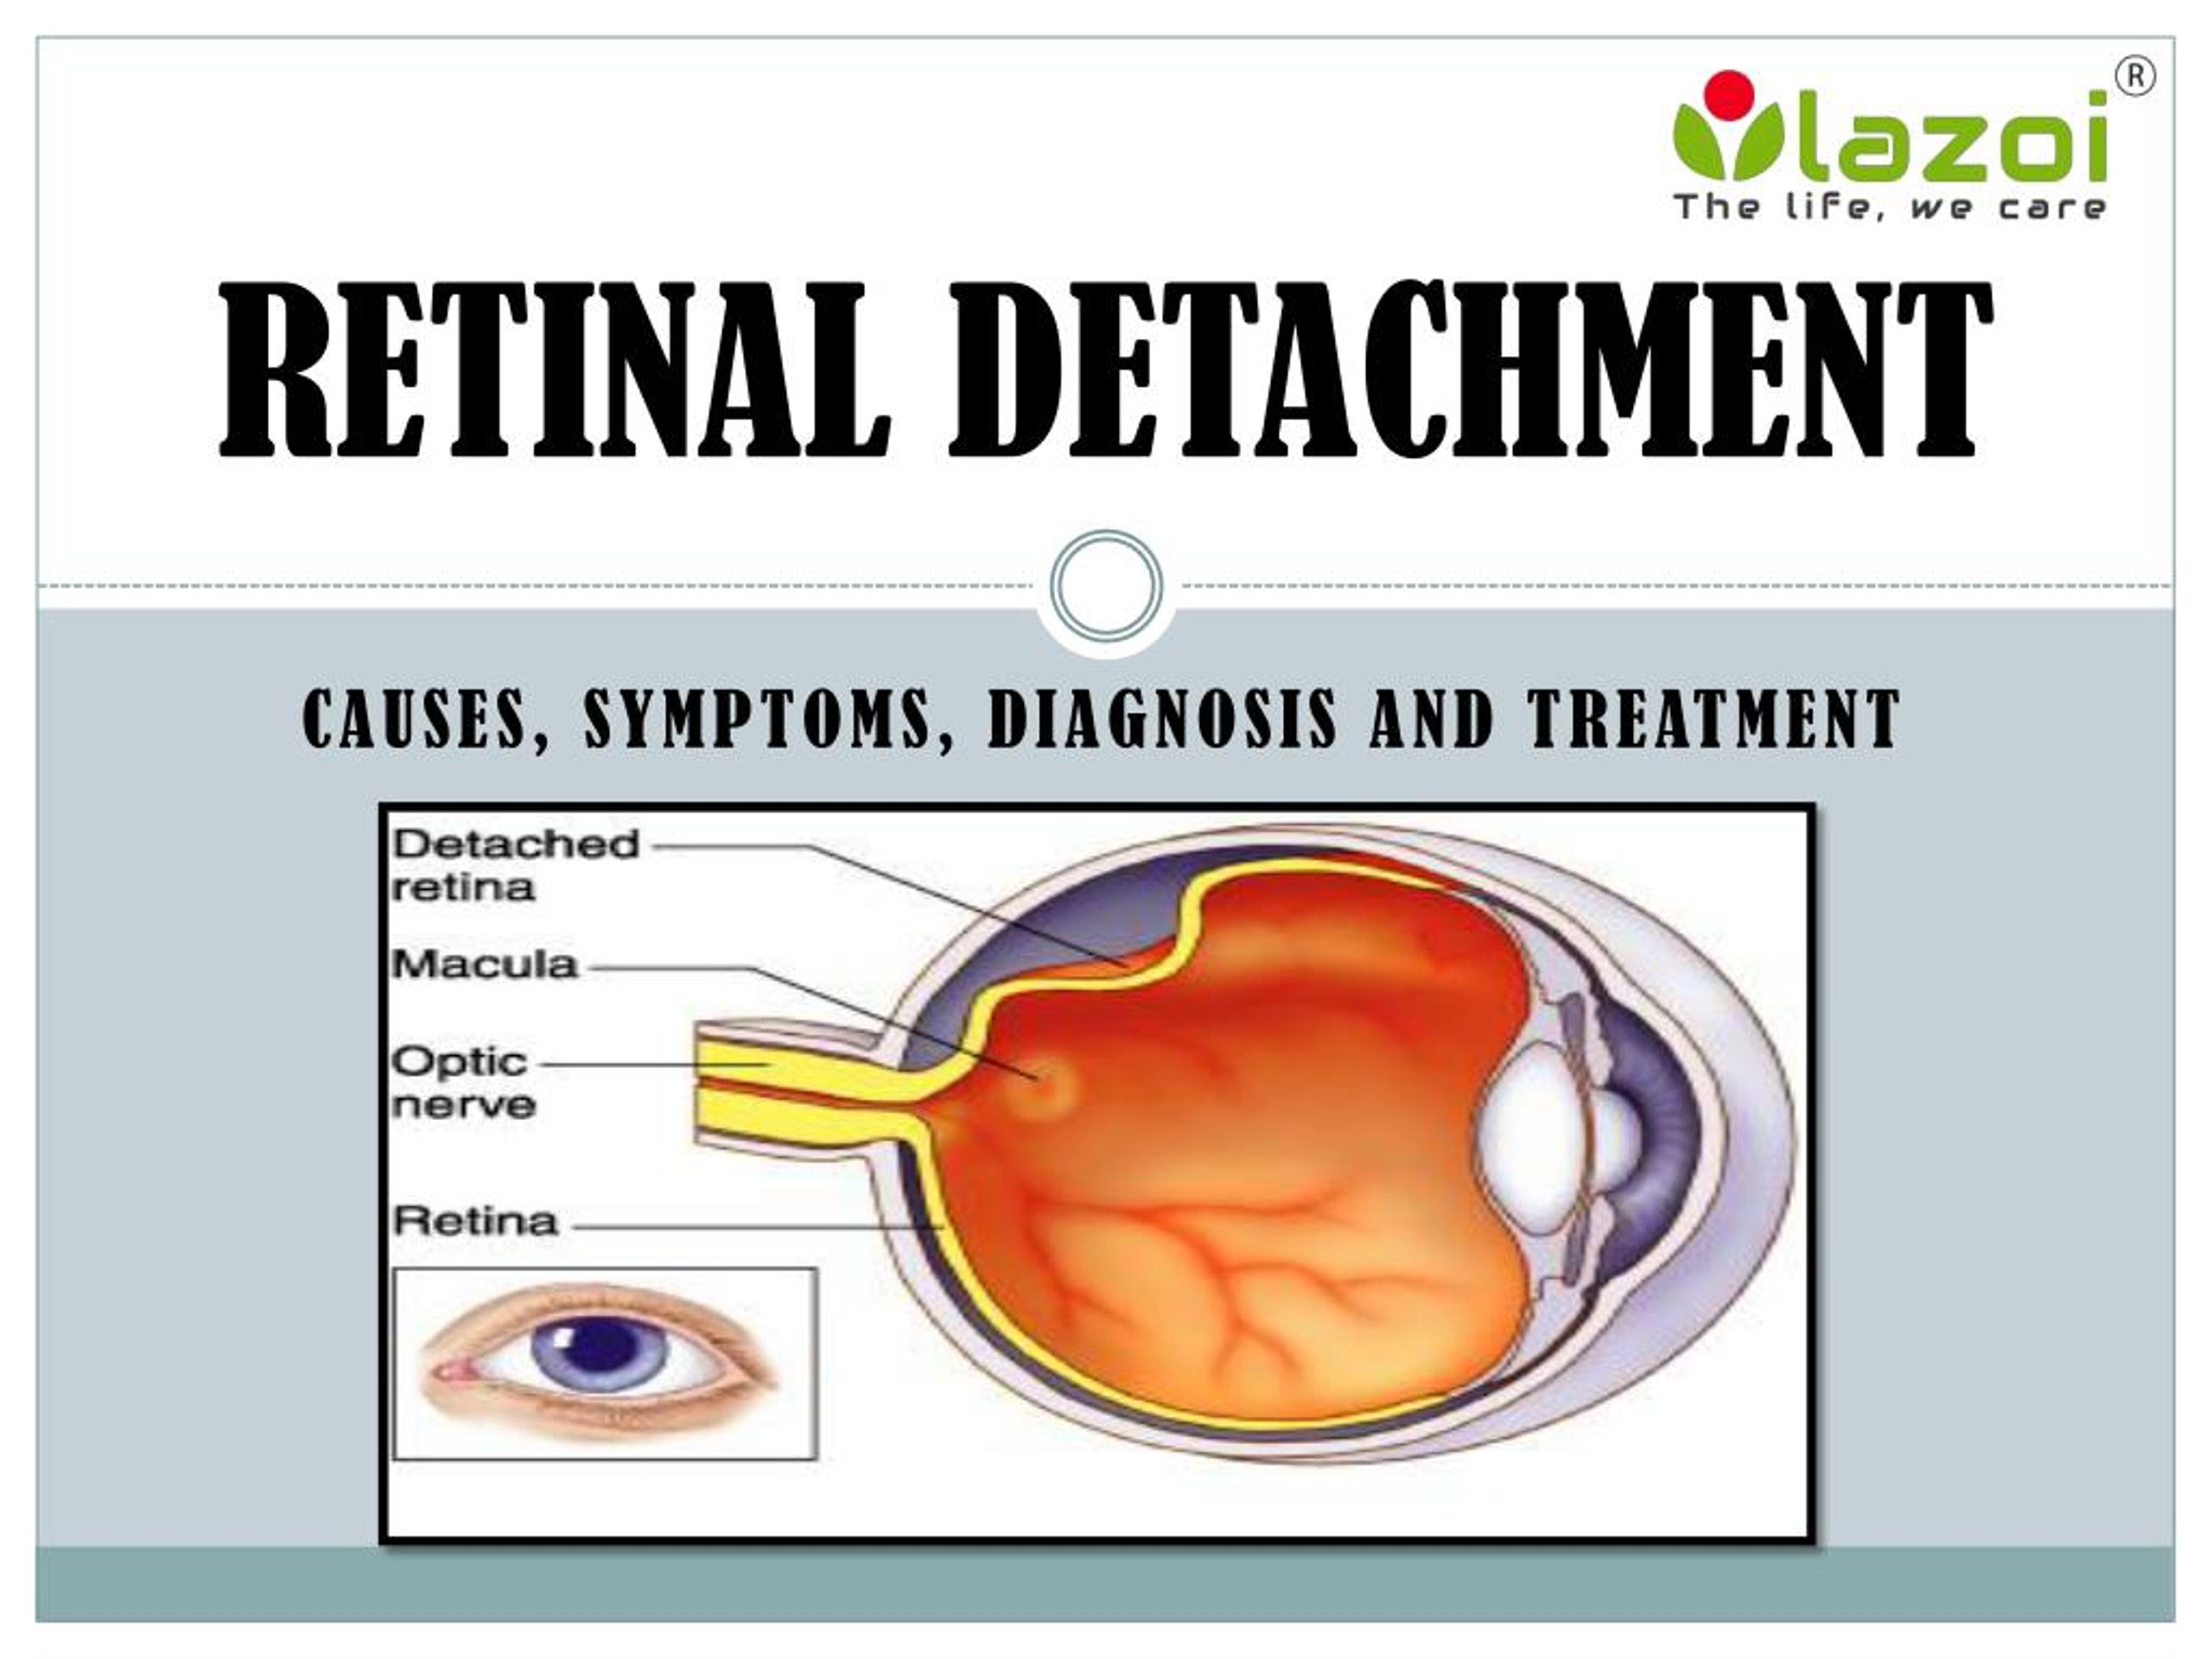 PPT Retinal Detachment Causes Symptoms Diagnosis and Treatment 